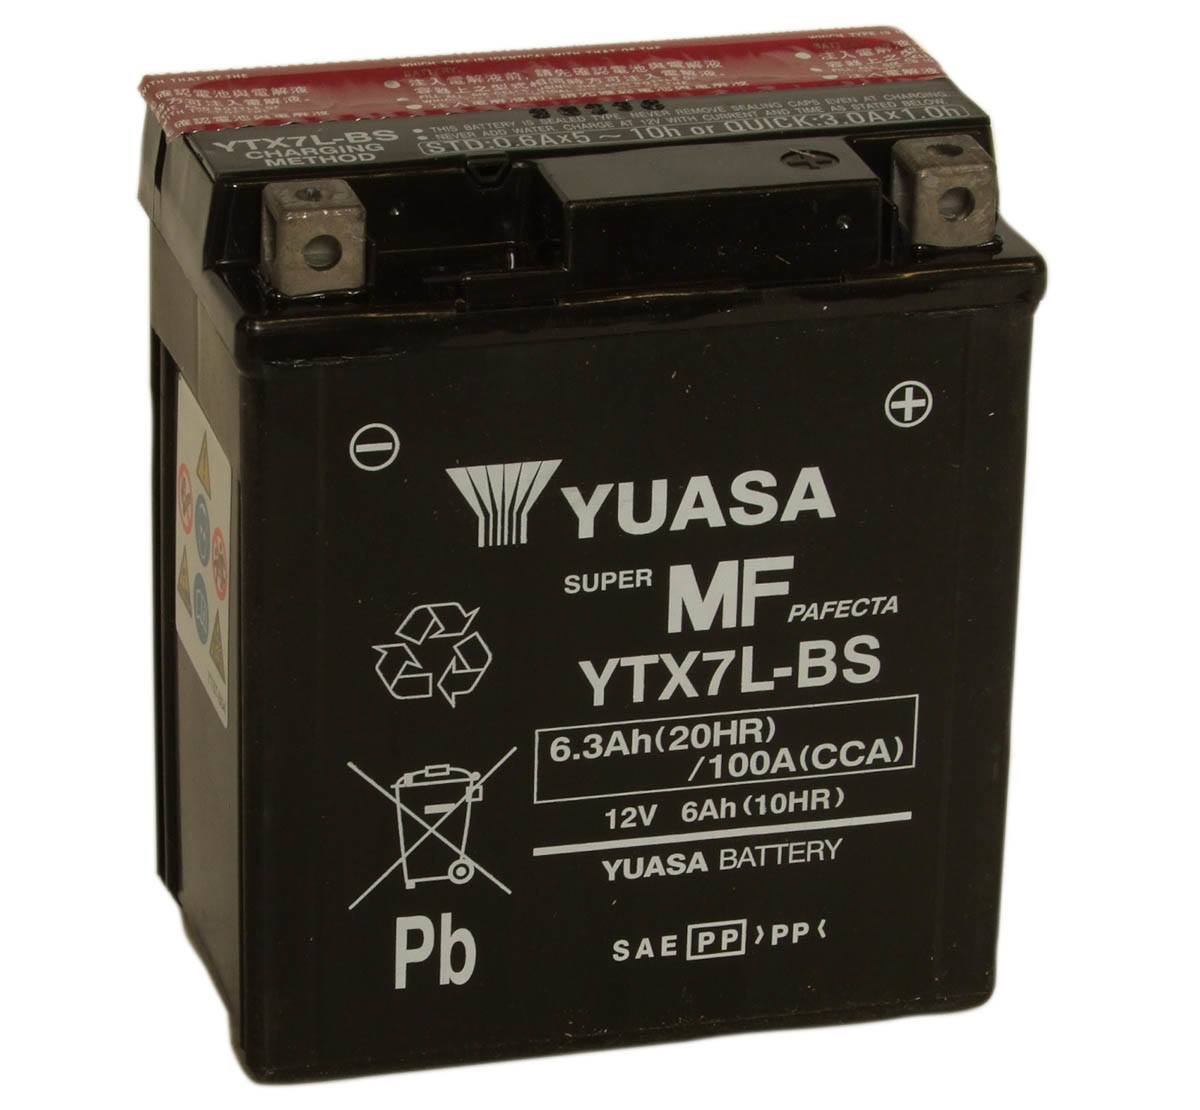 Yuasa YTX7L-BS 12V Motorcycle Battery